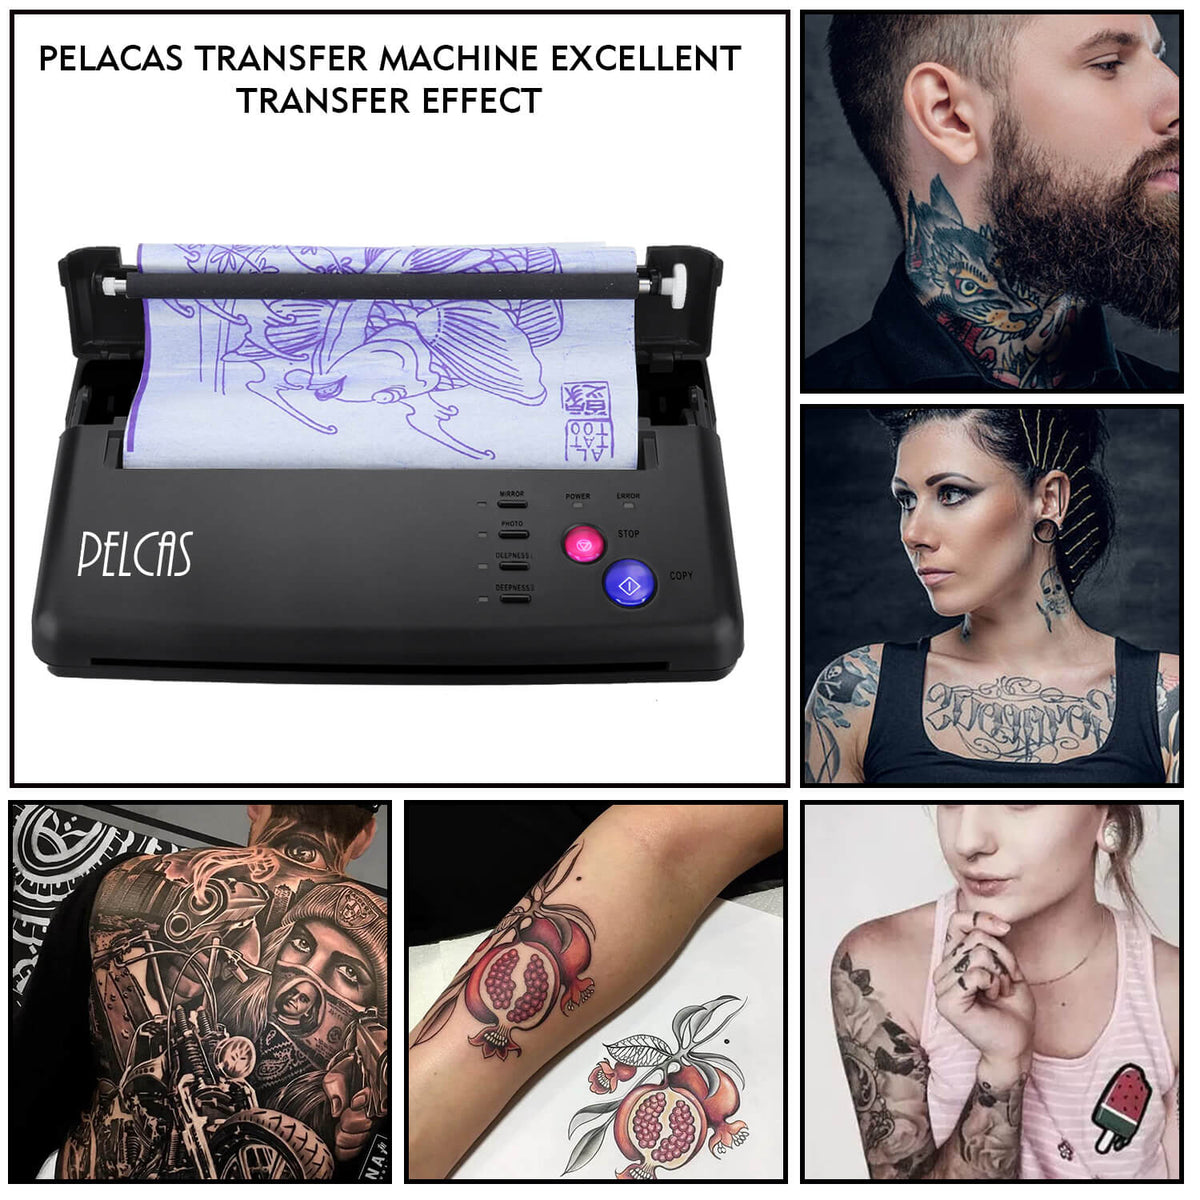 Tattoo Thermal Stencil Maker Tattoo Transfer Copier Stencil